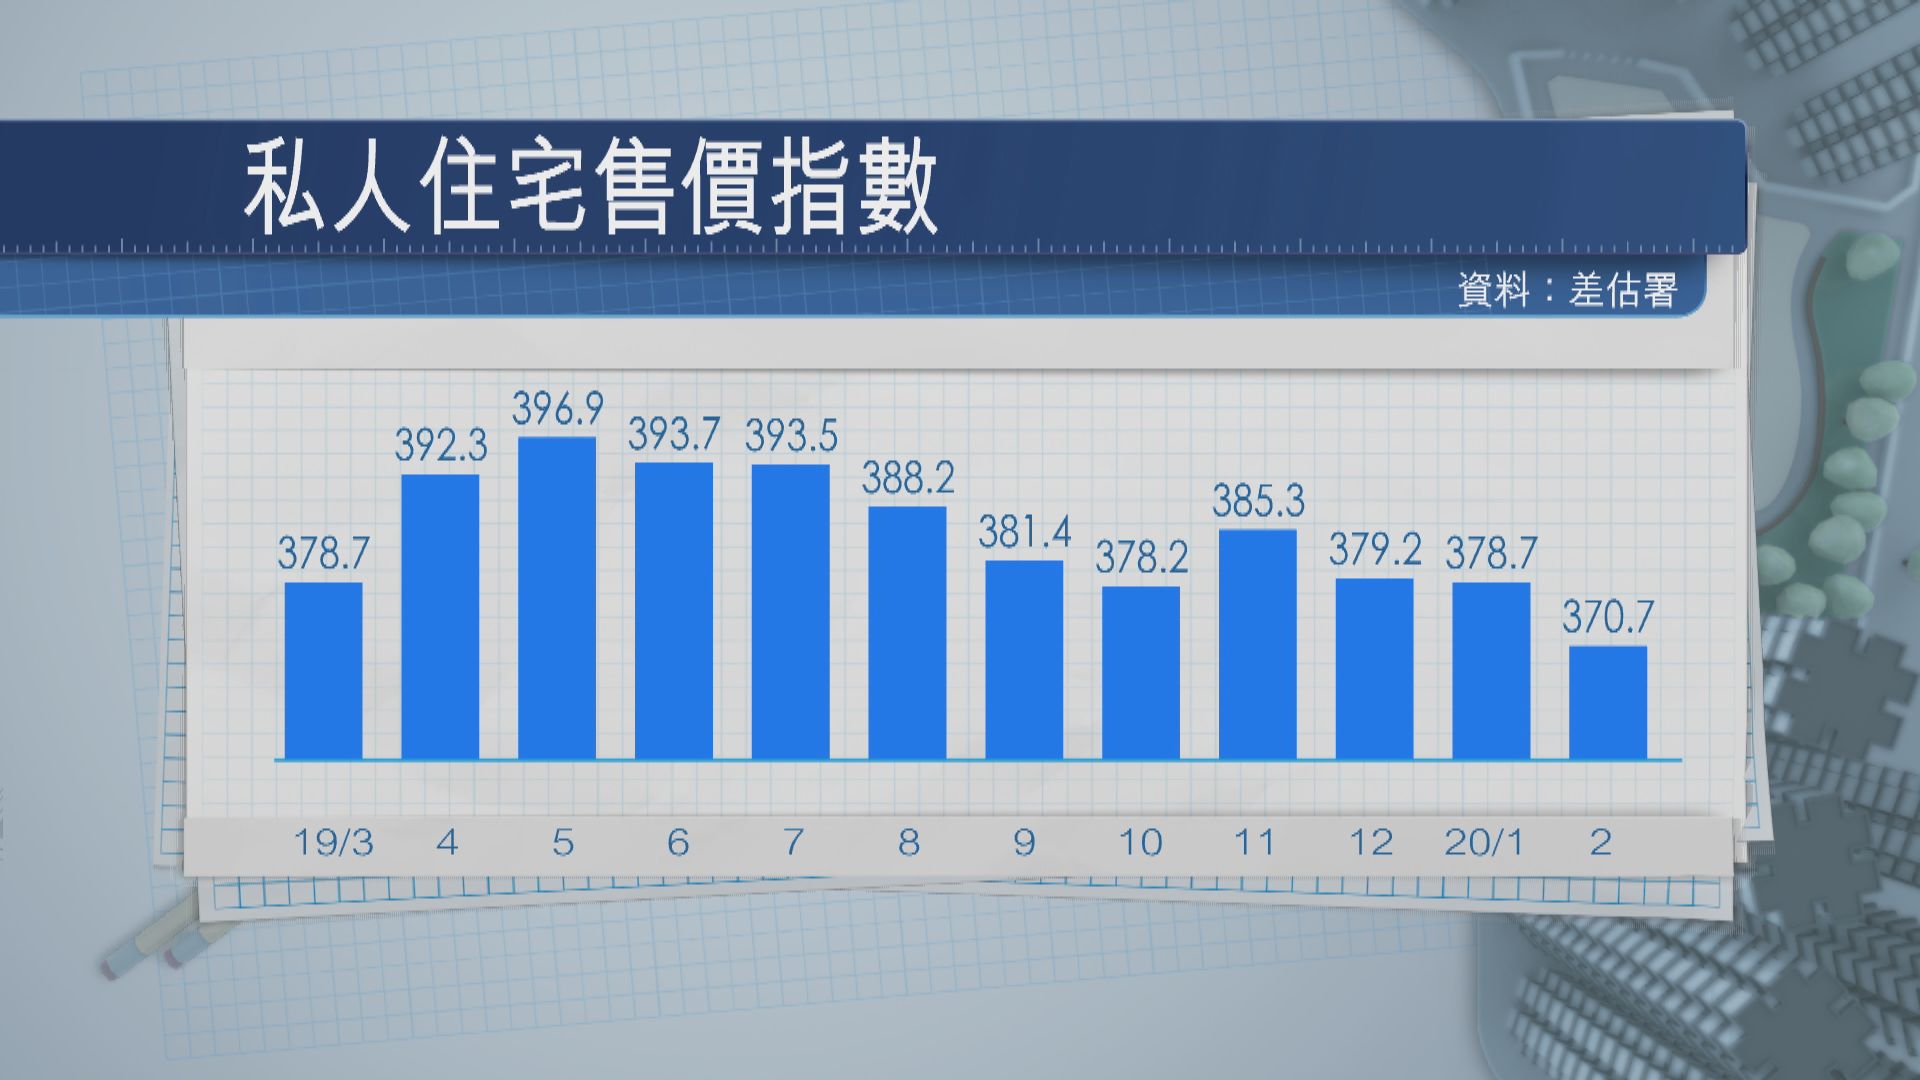 【香港樓價】差估署樓價按月跌逾2%報370.7